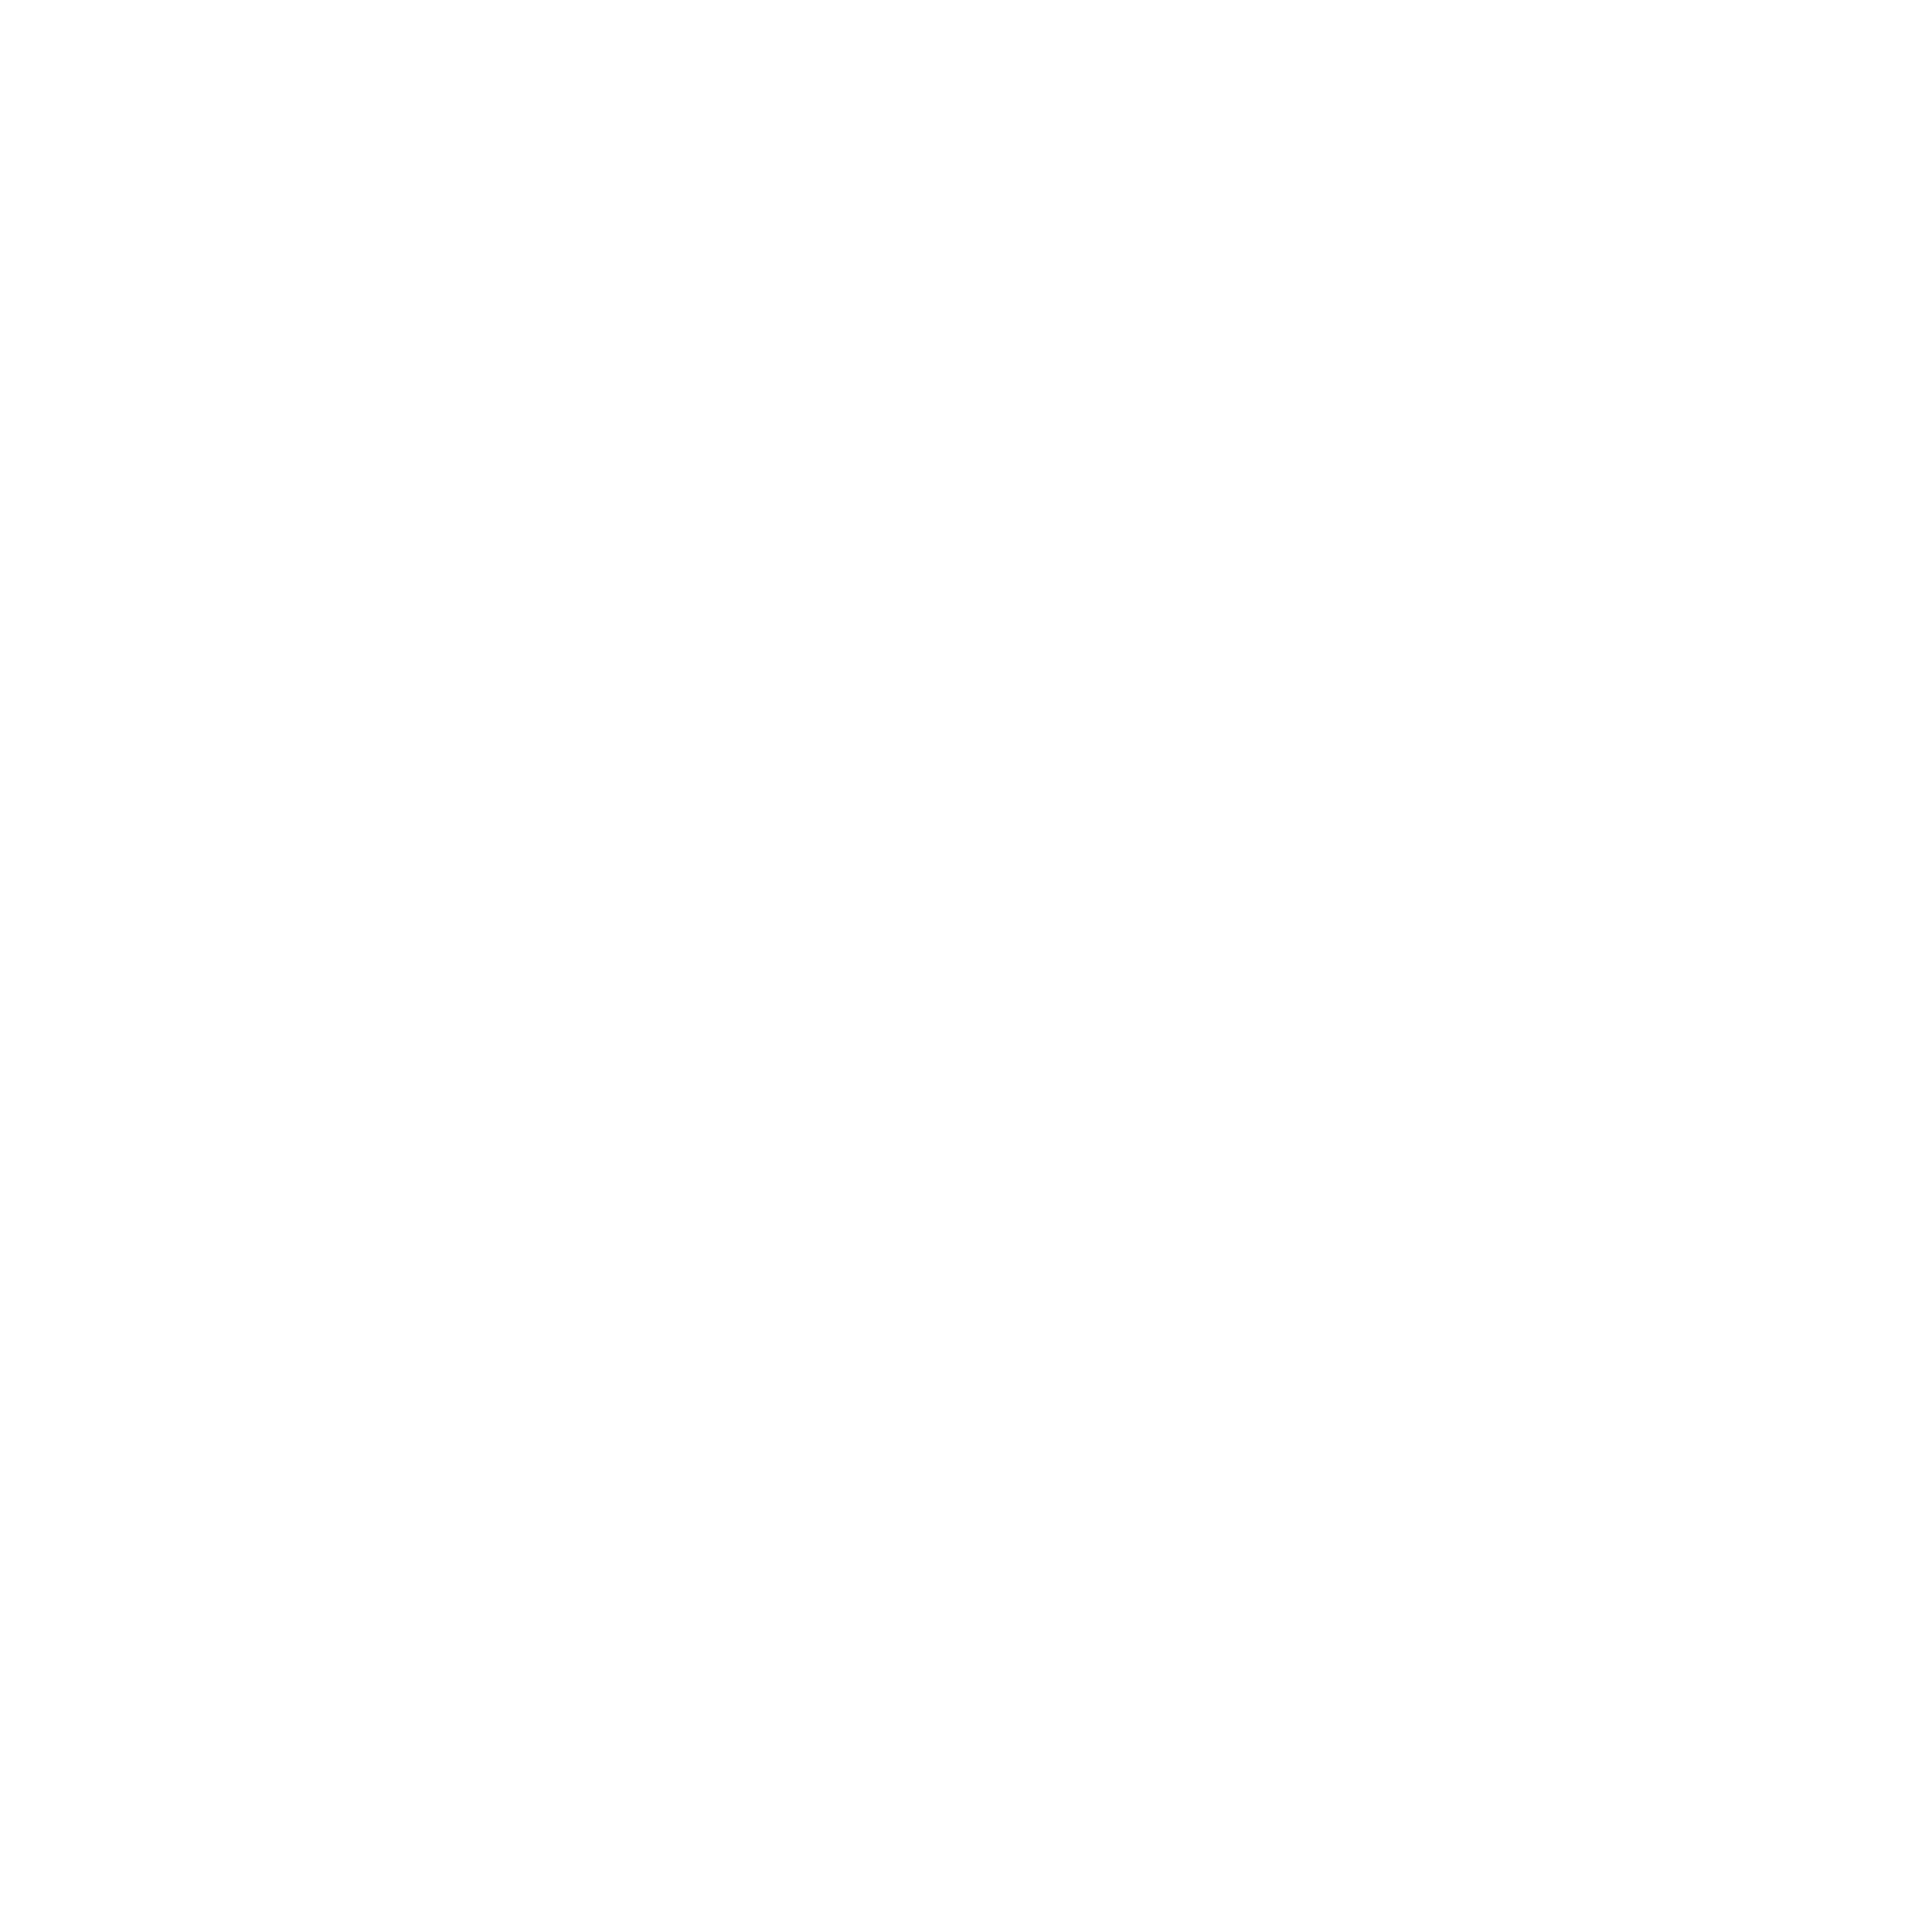 Logo décoratif blanc de l'artiste peintre Patricia Huber représentant un cerf-volant de soleil avec au centre une spirale.